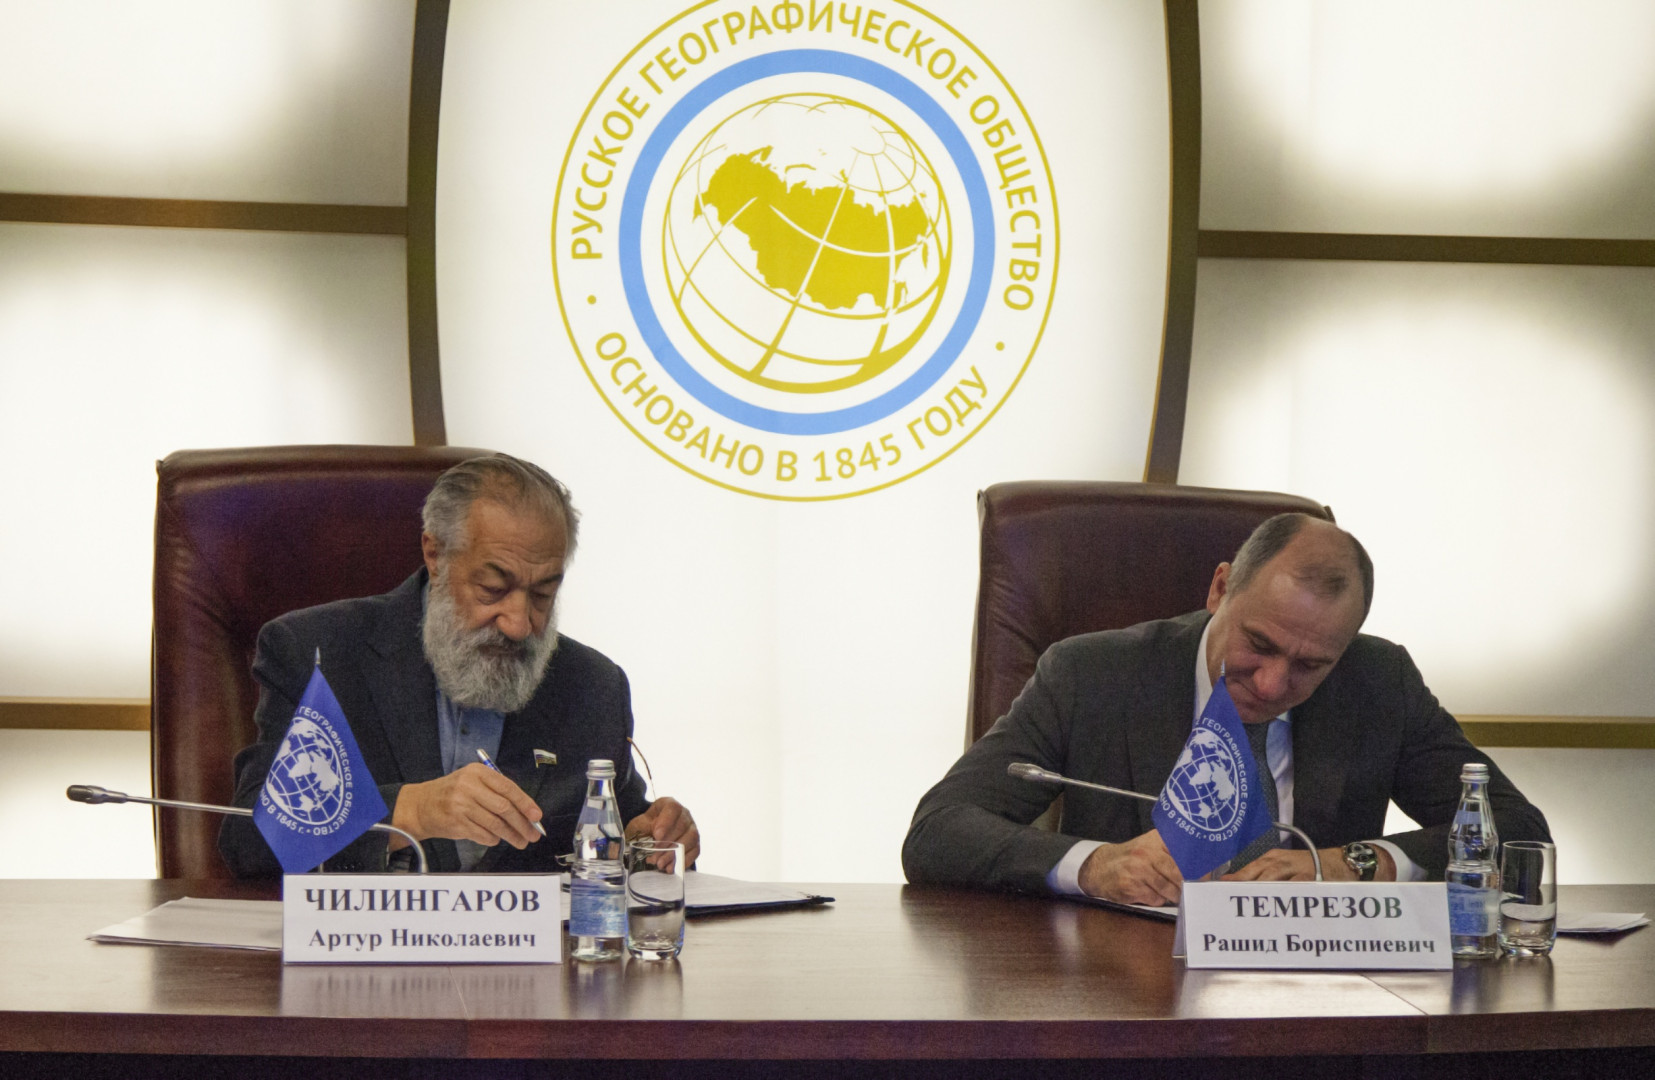 Церемония подписания соглашения о взаимодействии между Русским географическим обществом и Карачаево-Черкесской Республикой.